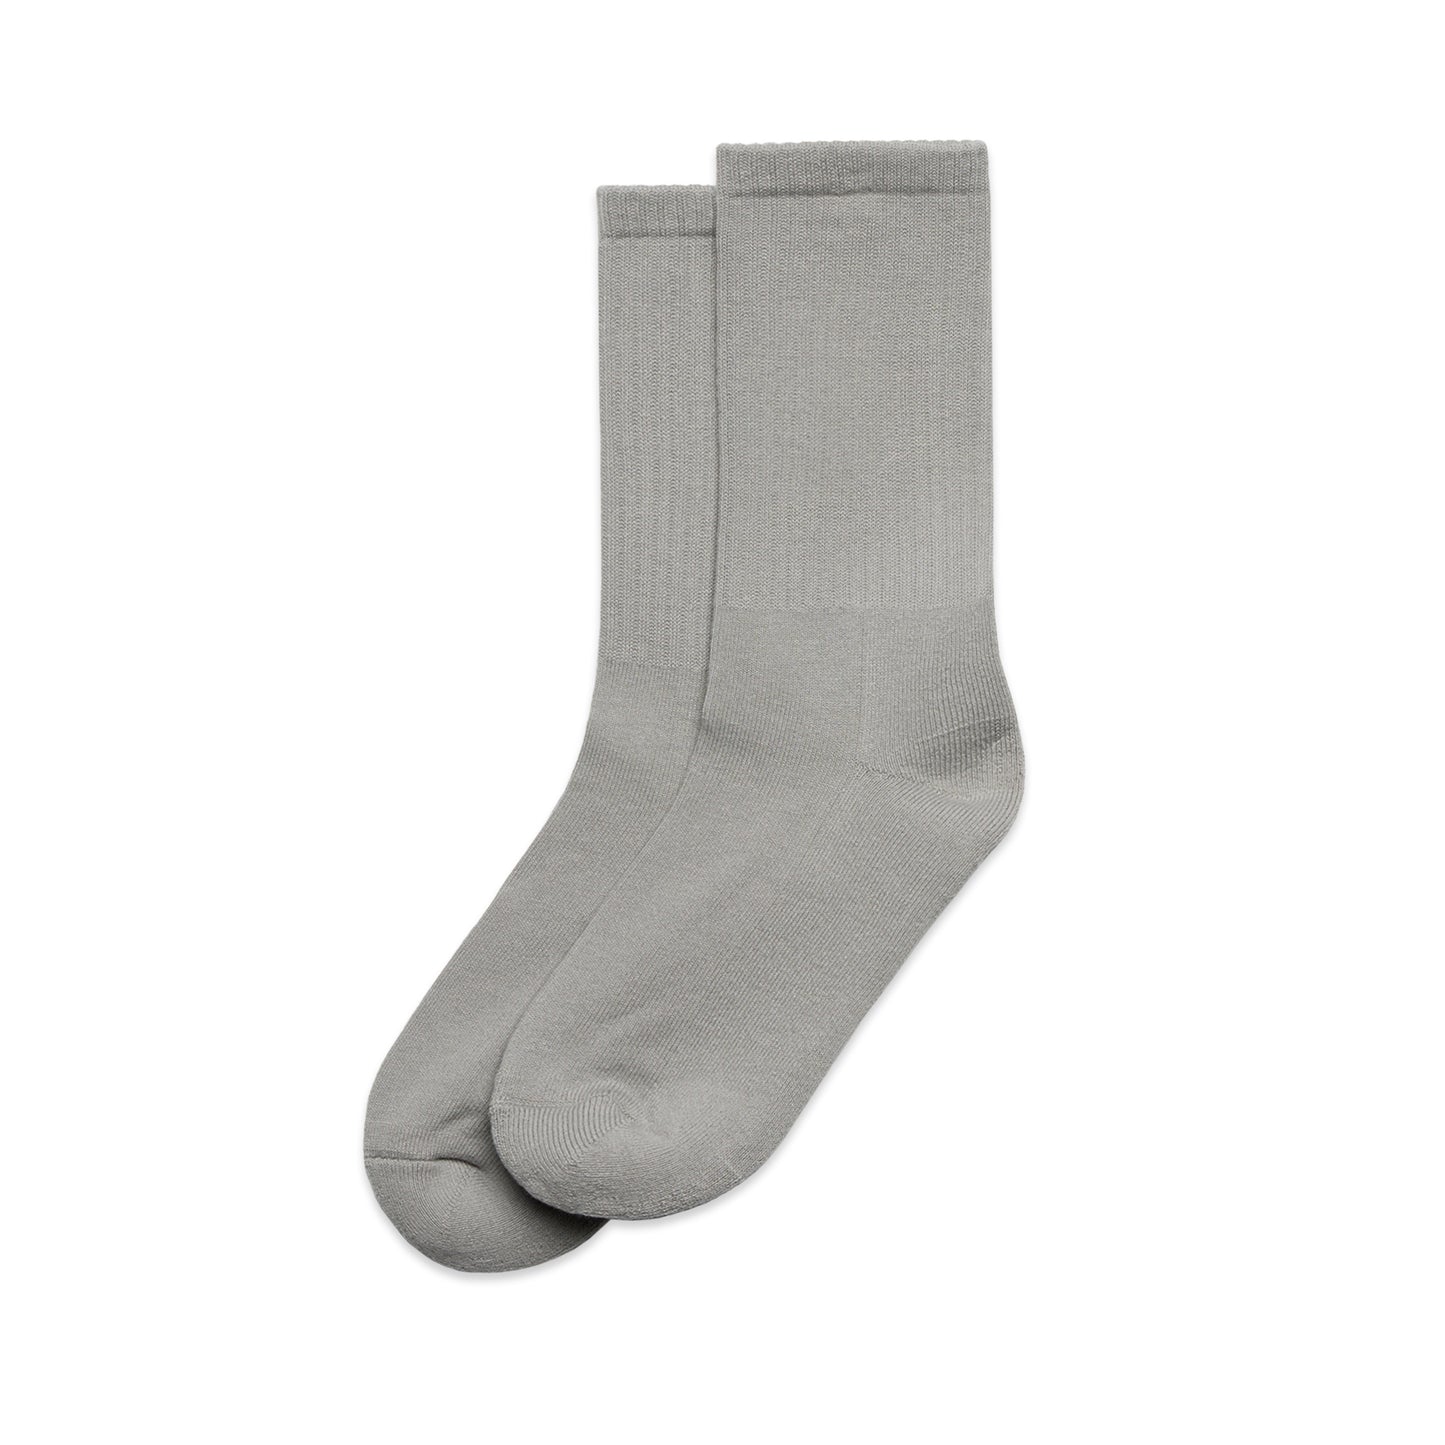 Ascolour Relax Socks (2 Pack) - (1208)